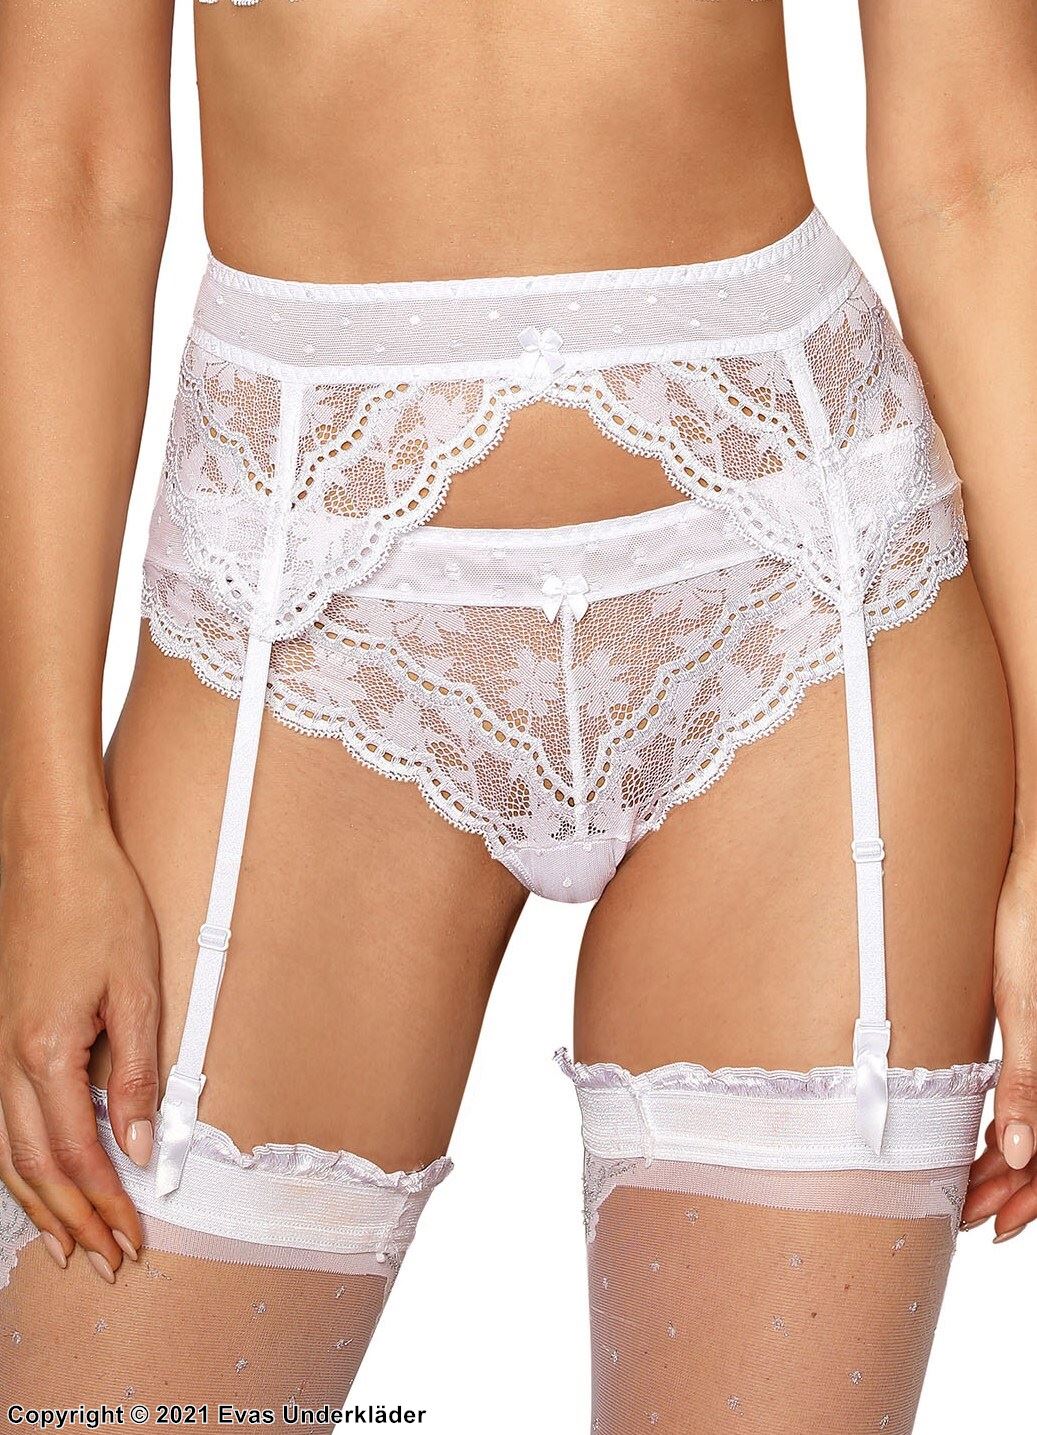 Romantic garter belt, beautiful lace, small dots